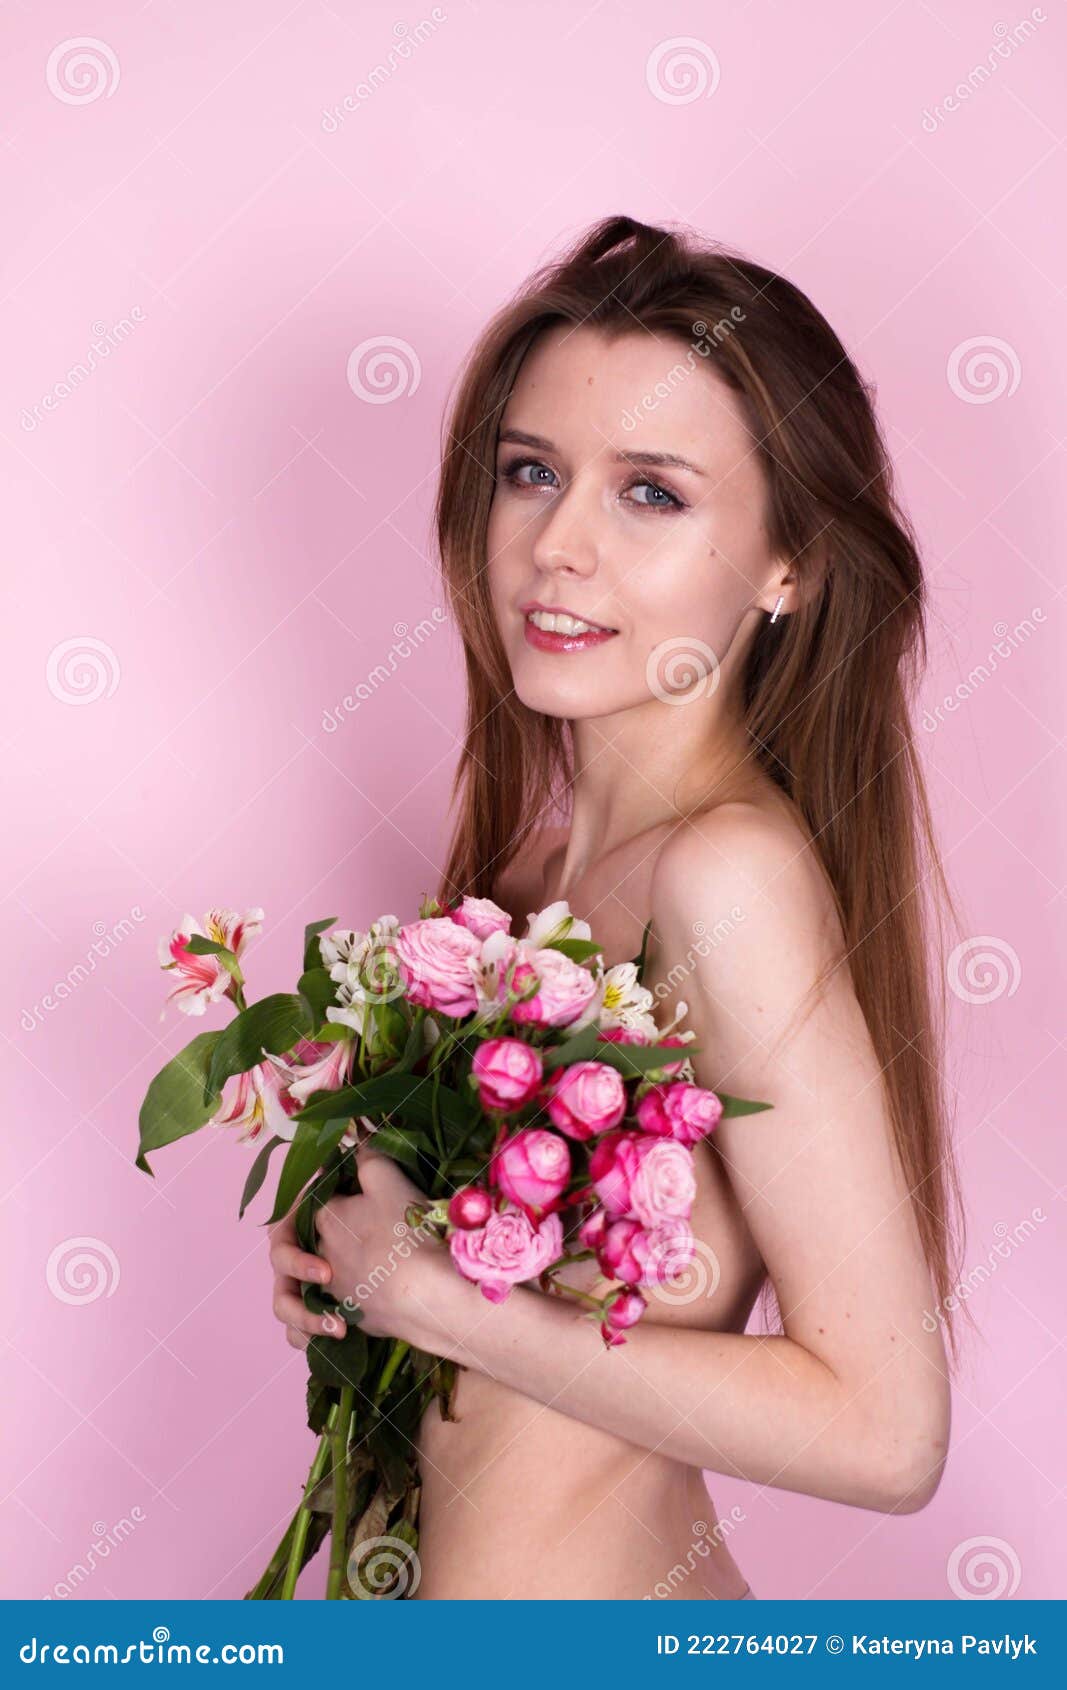 Голая девушка с букетом белых цветов